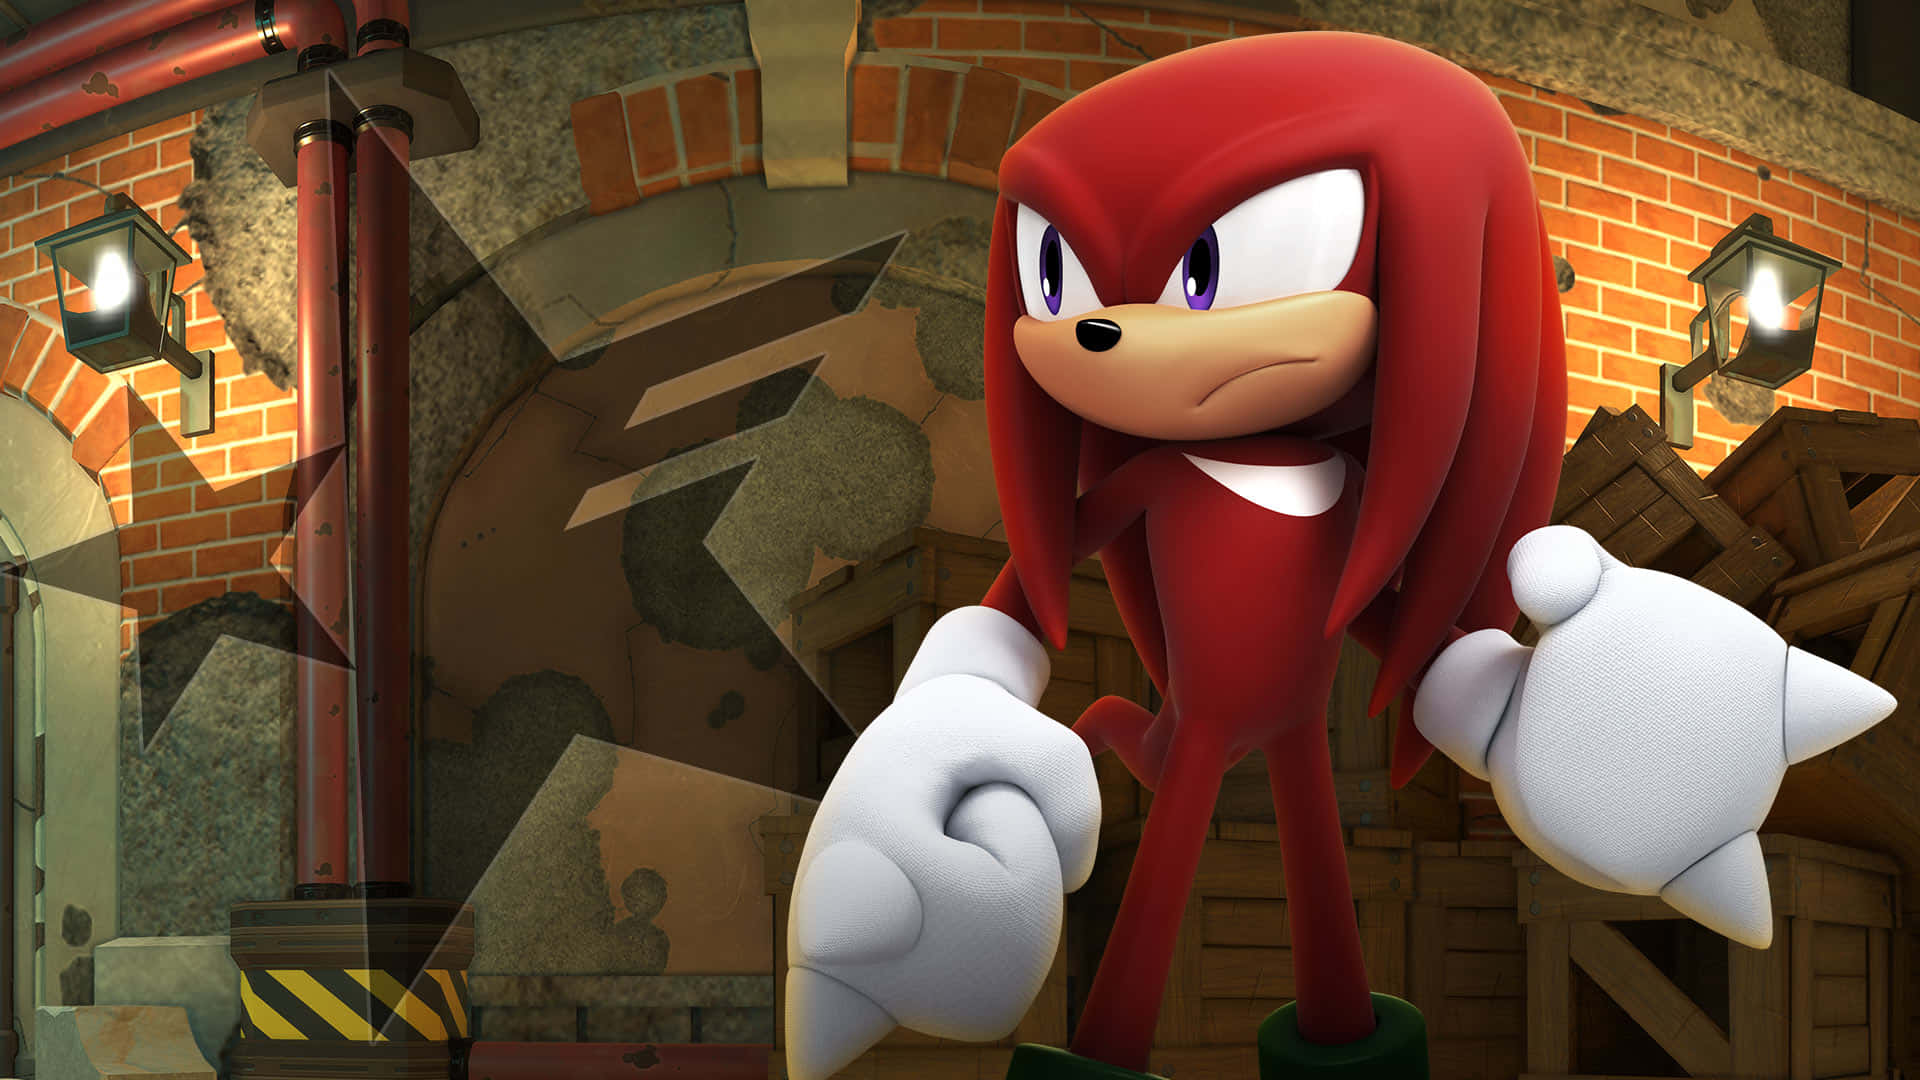 Sonicthe Hedgehog In Un Outfit Rosso In Piedi Davanti A Un Muro Di Mattoni. Sfondo